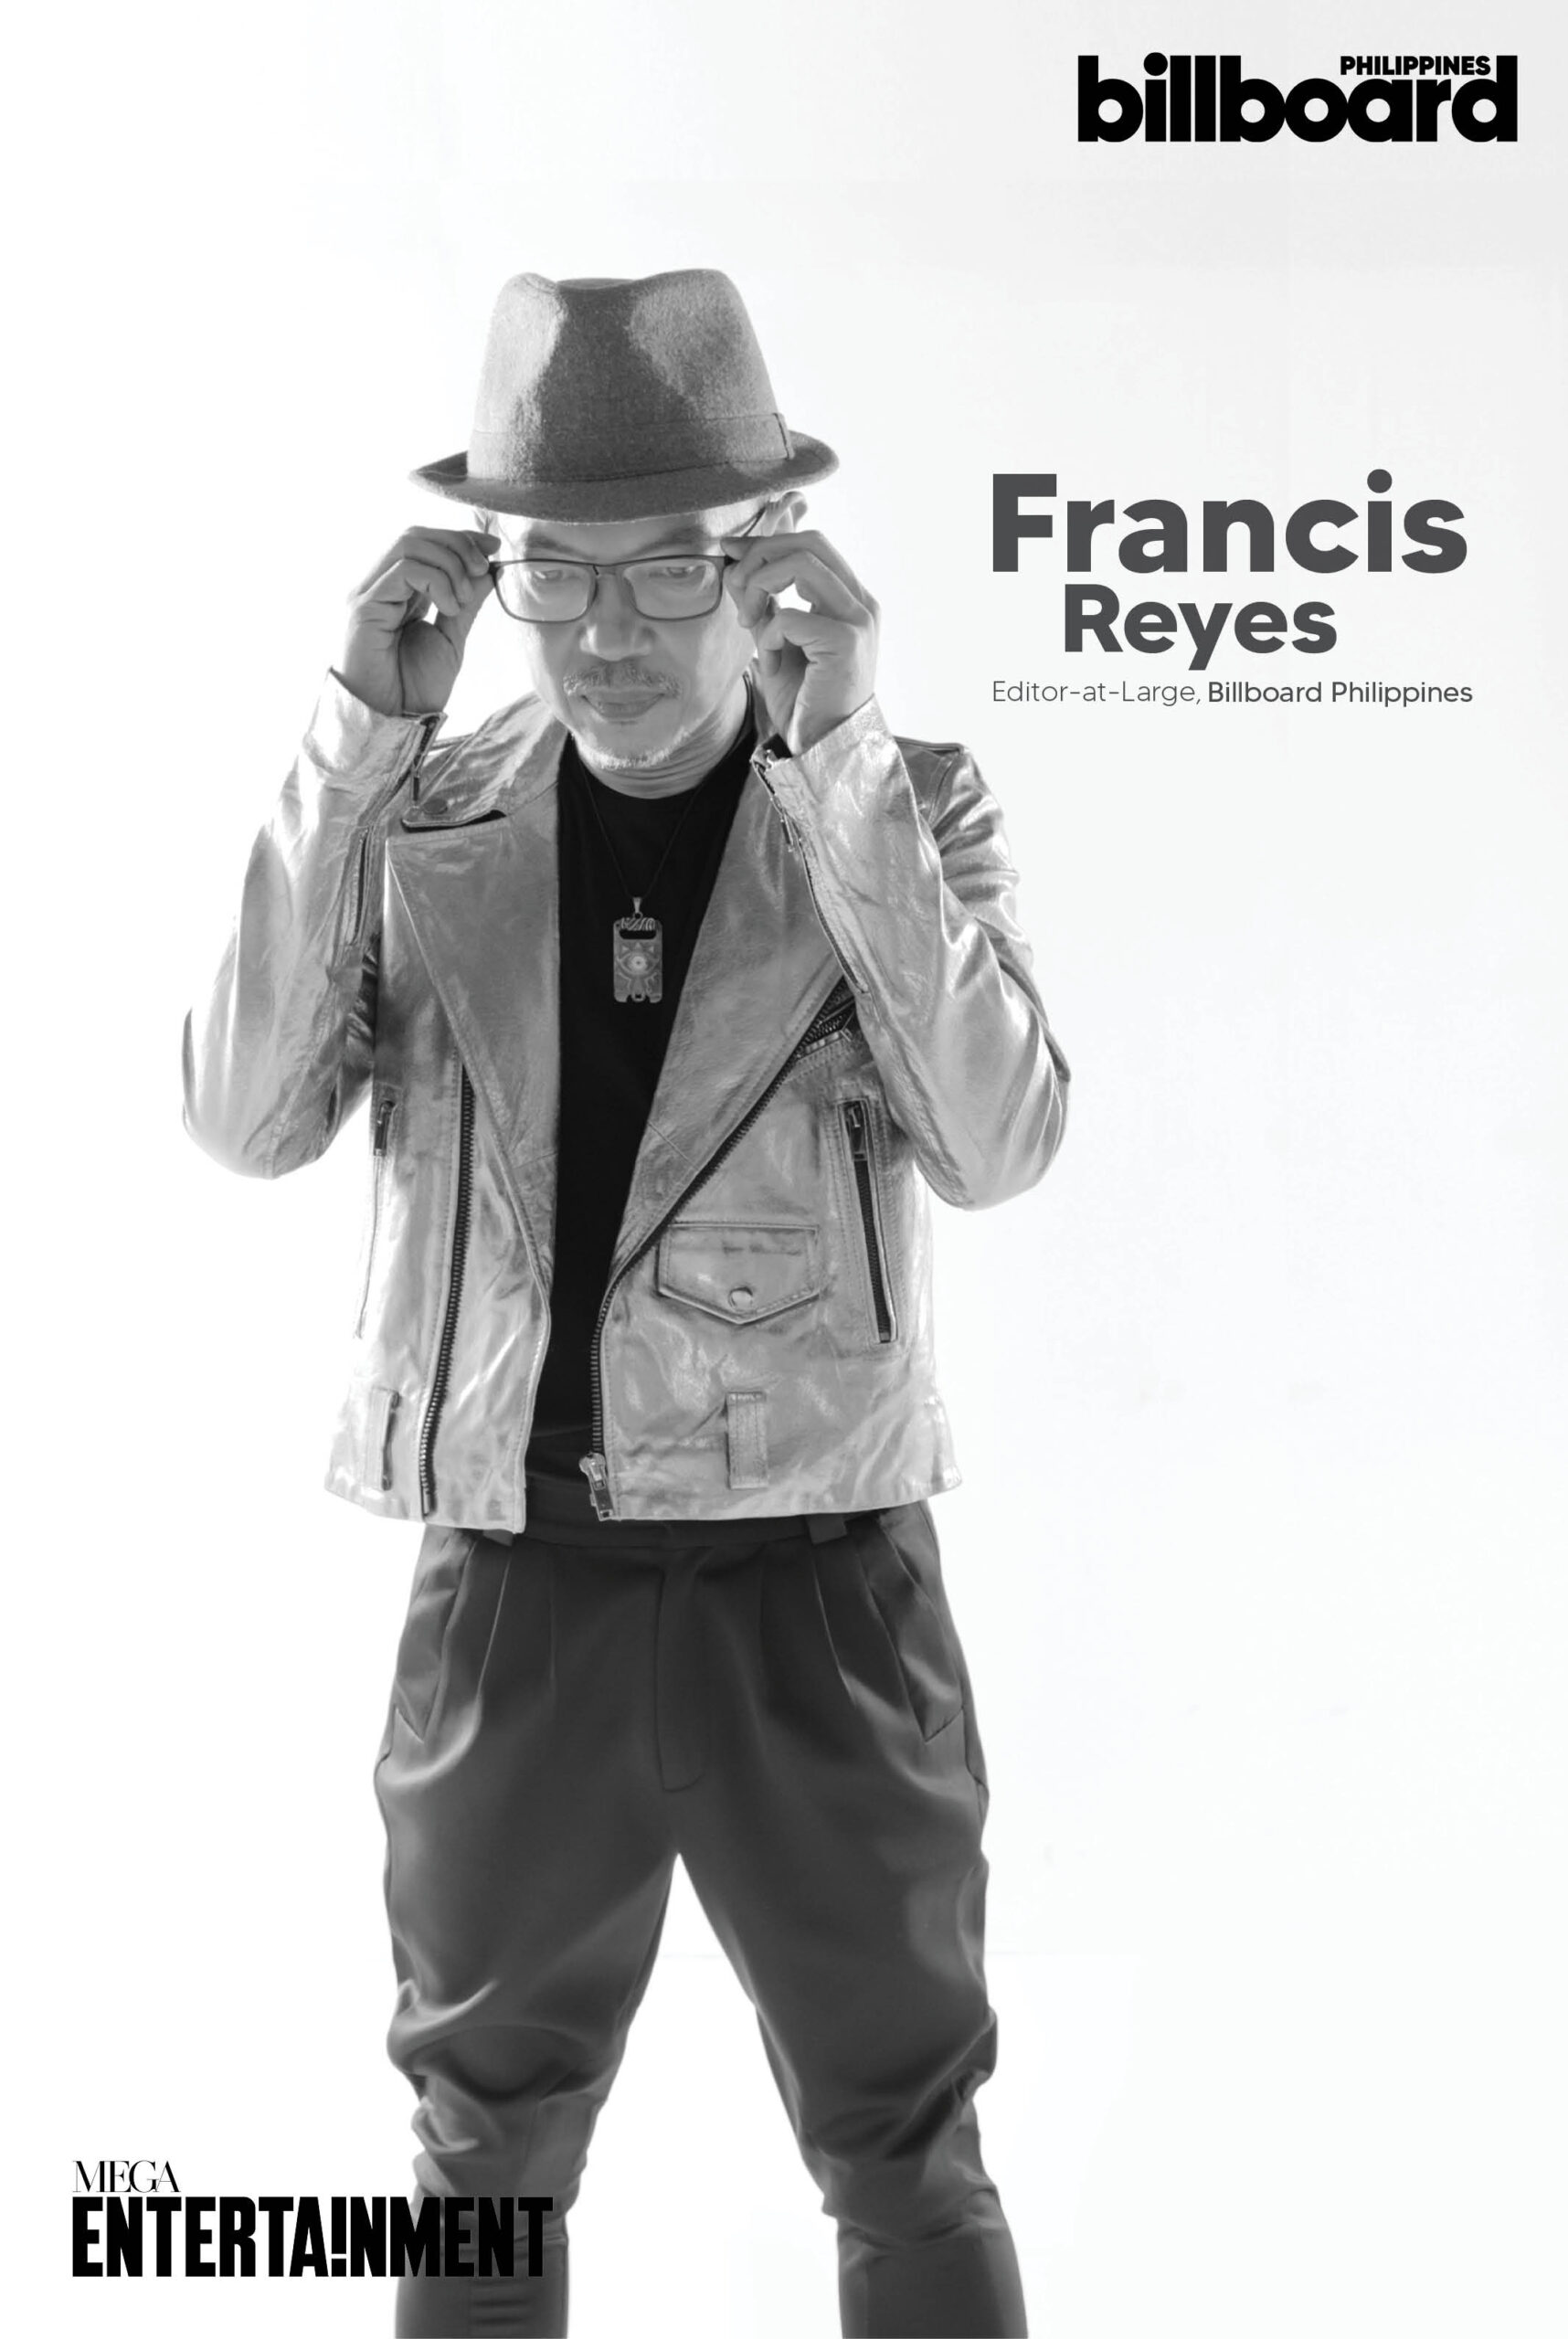 Francis Reyes, Editor-at-Large